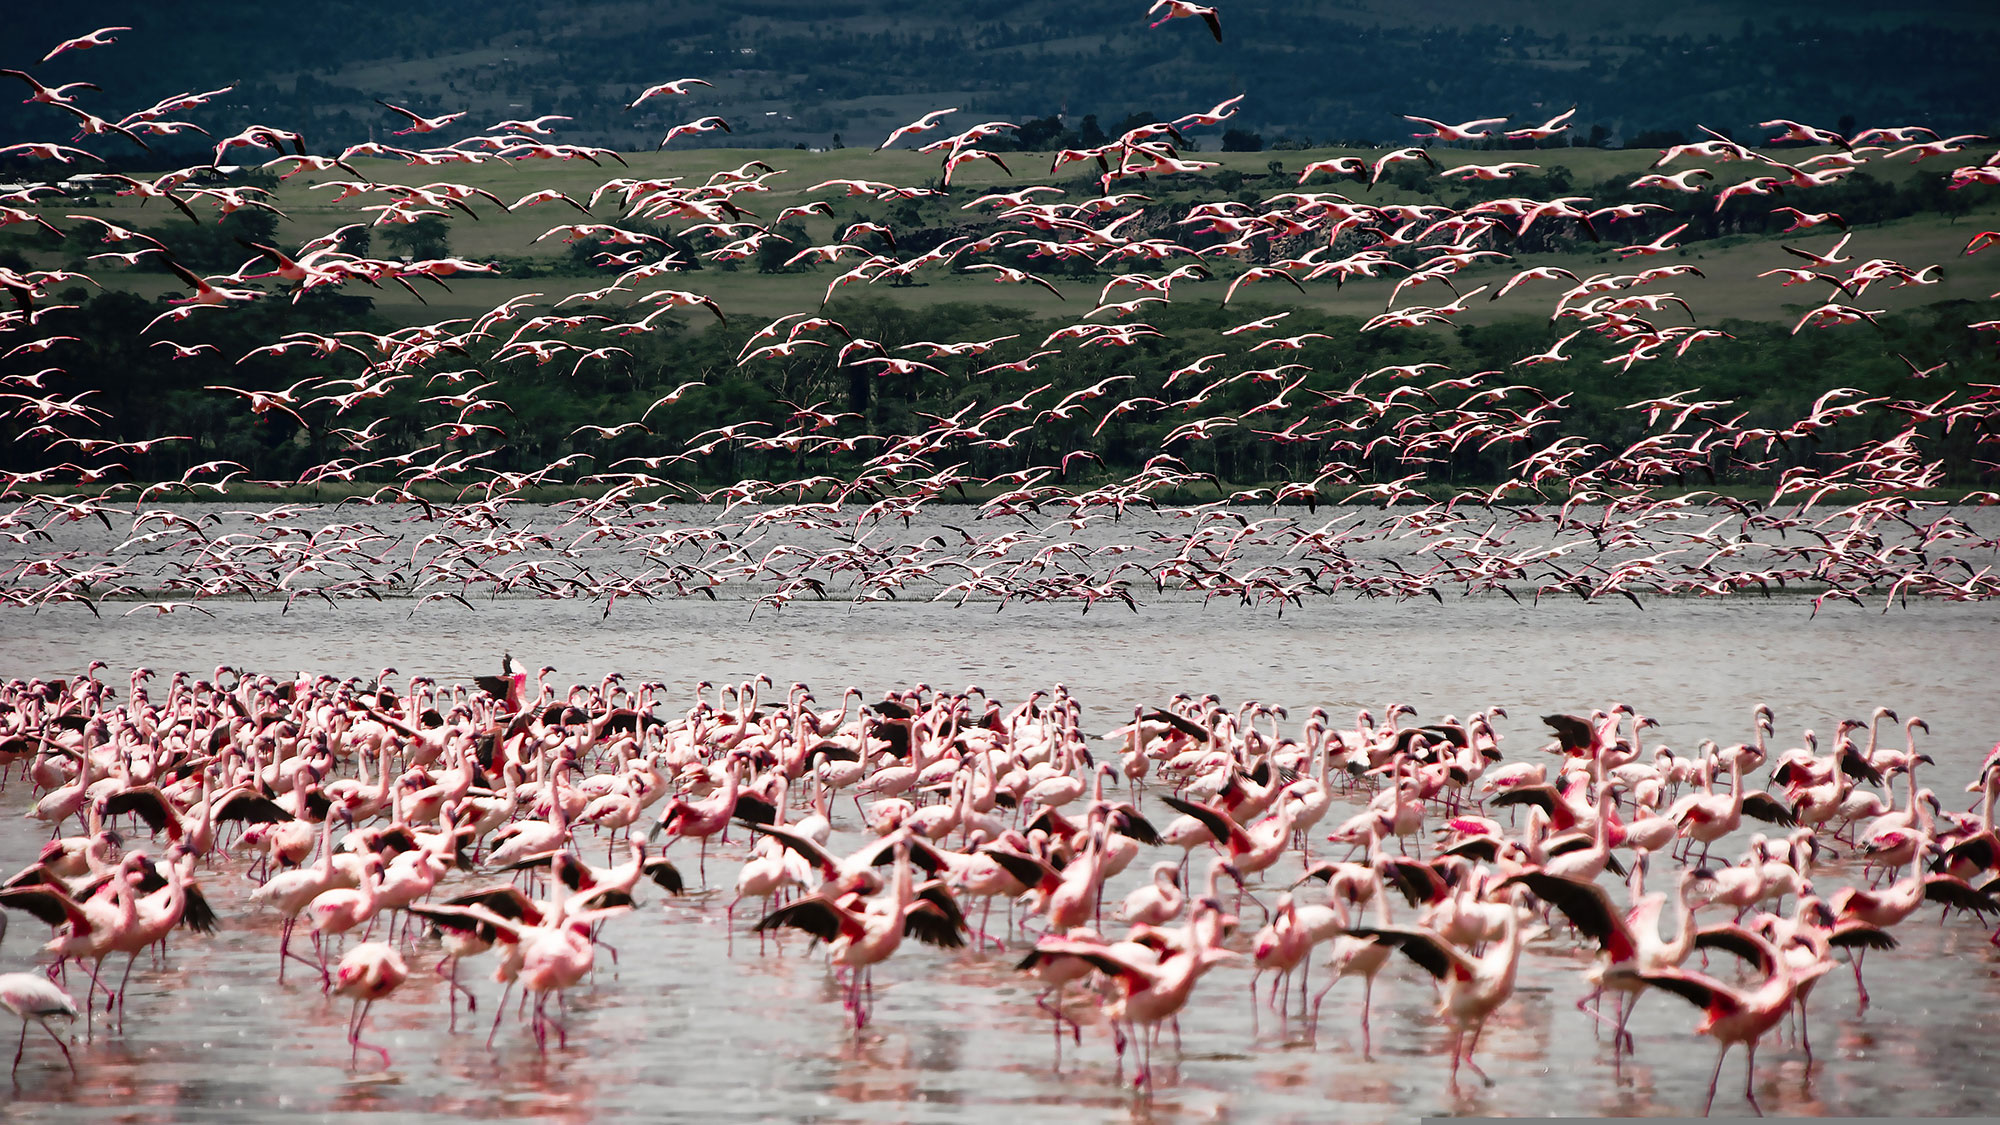 A flock of flamingos on a beach.